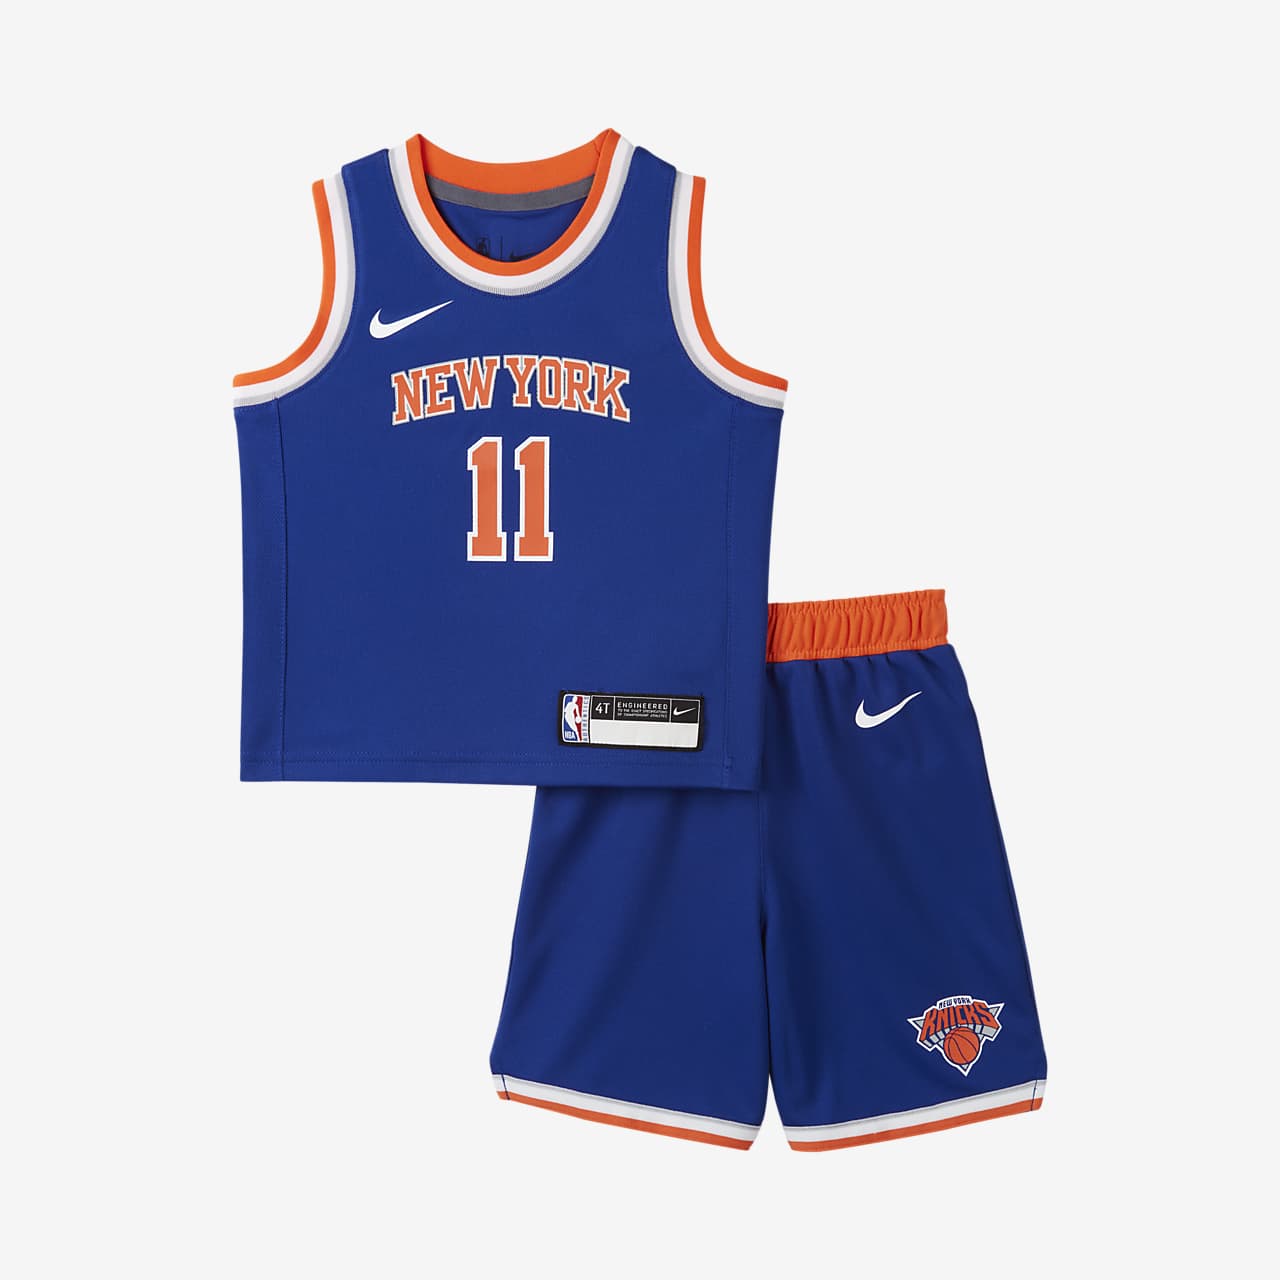 Replica Toddlers' Nike NBA Jersey 